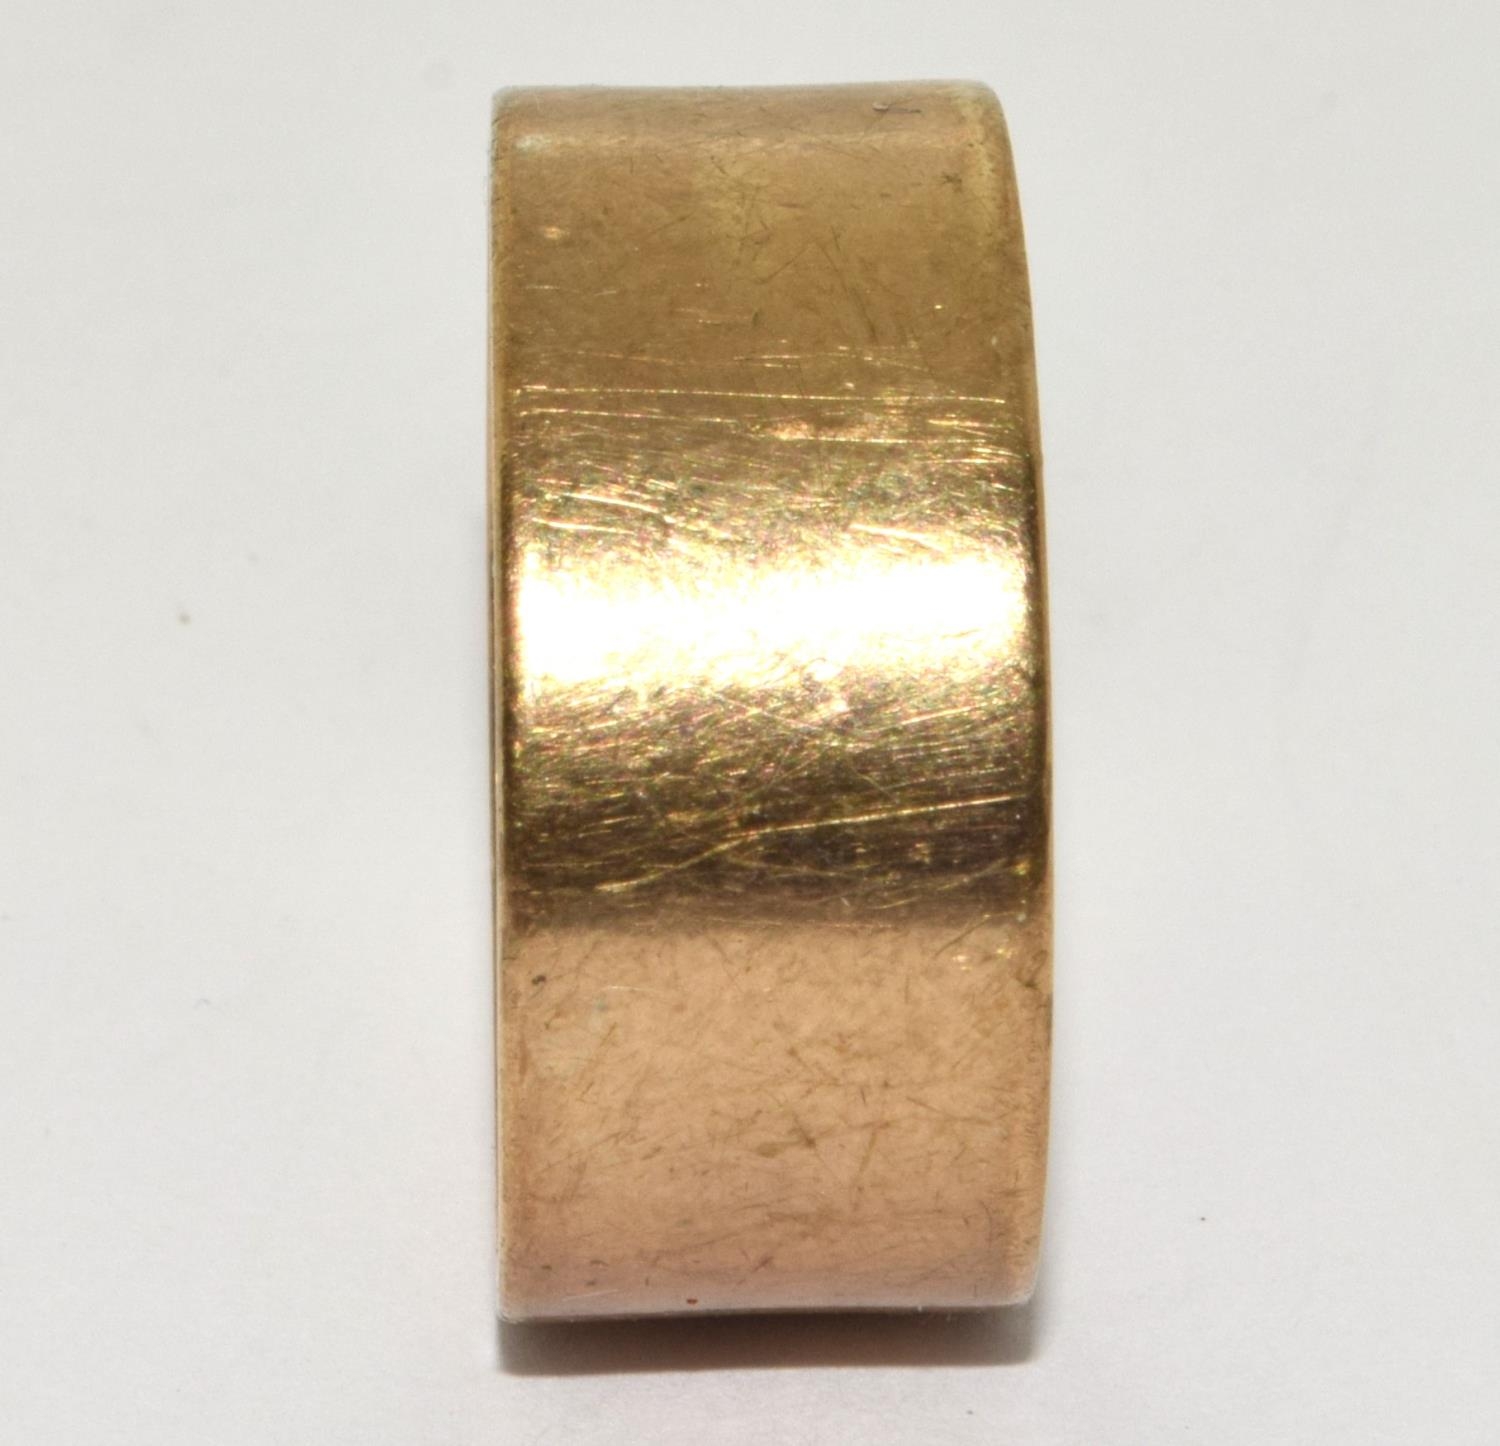 9ct gold good size wedding band 7.2g size V - Image 3 of 3